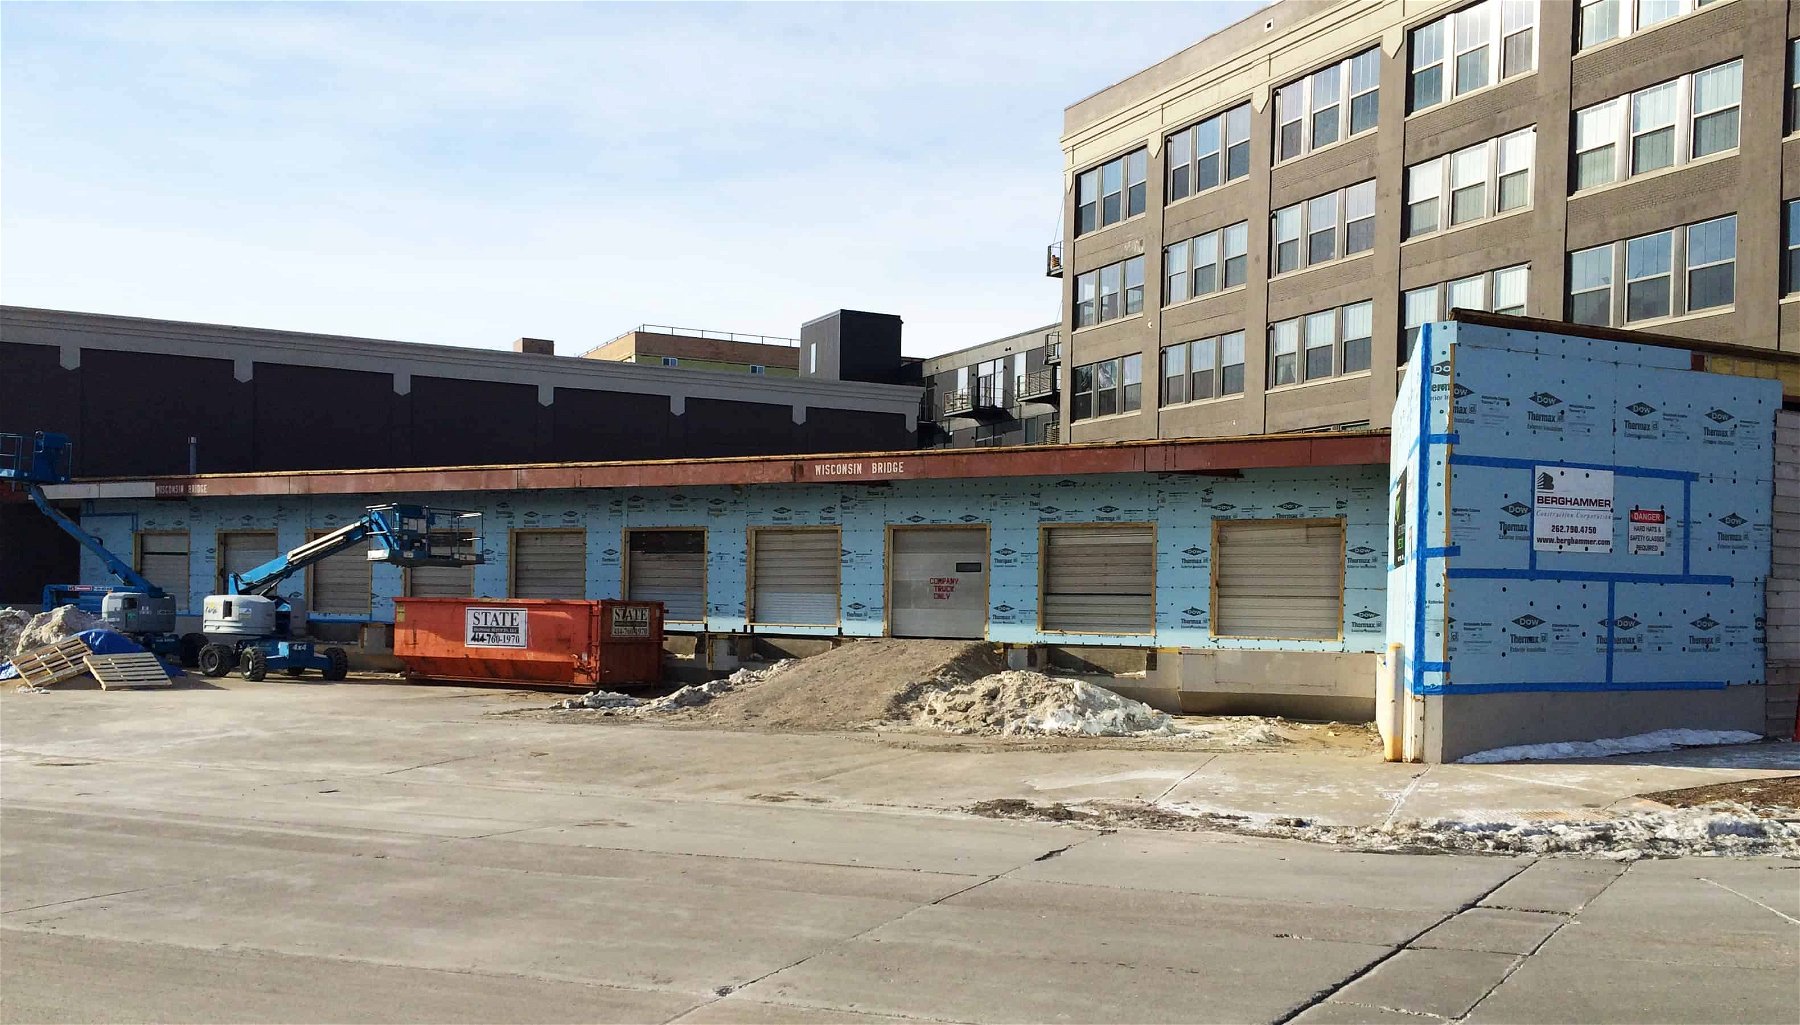 PRA Milwaukee Office on 209 S. Water Street under construction